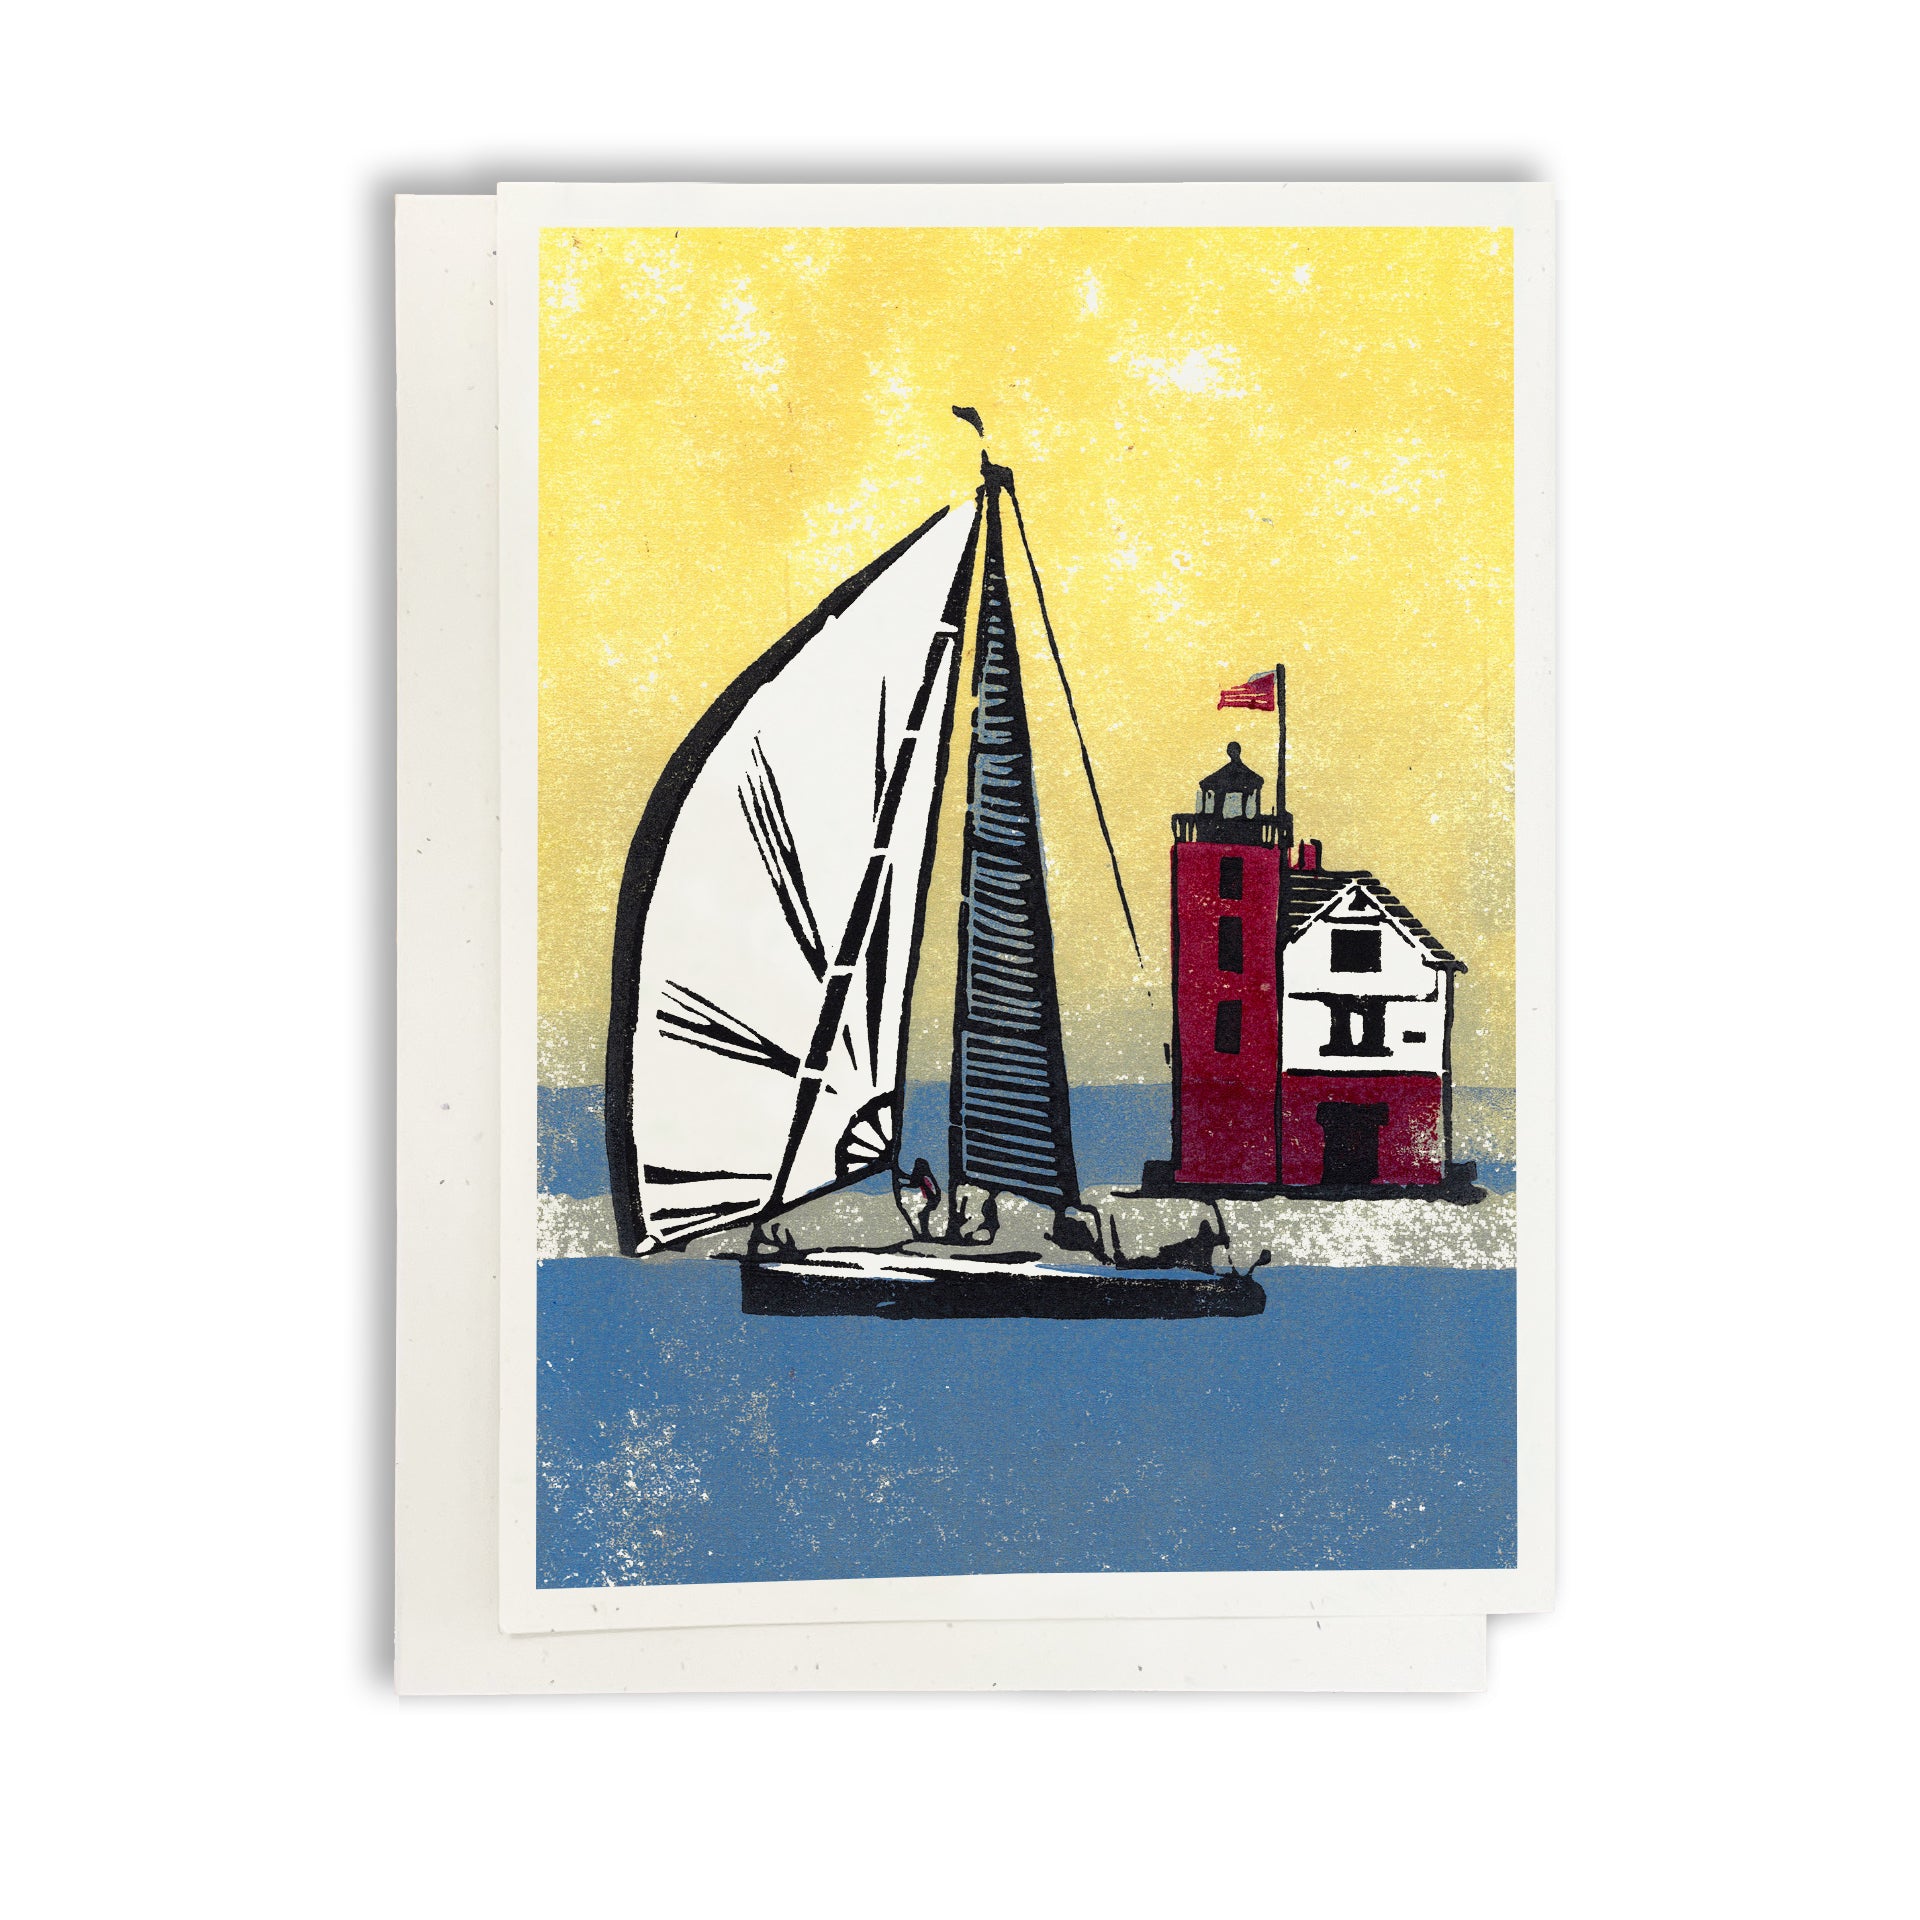 Foggy Finish sailing greeting card by Natalia Wohletz, Peninsula Prints.